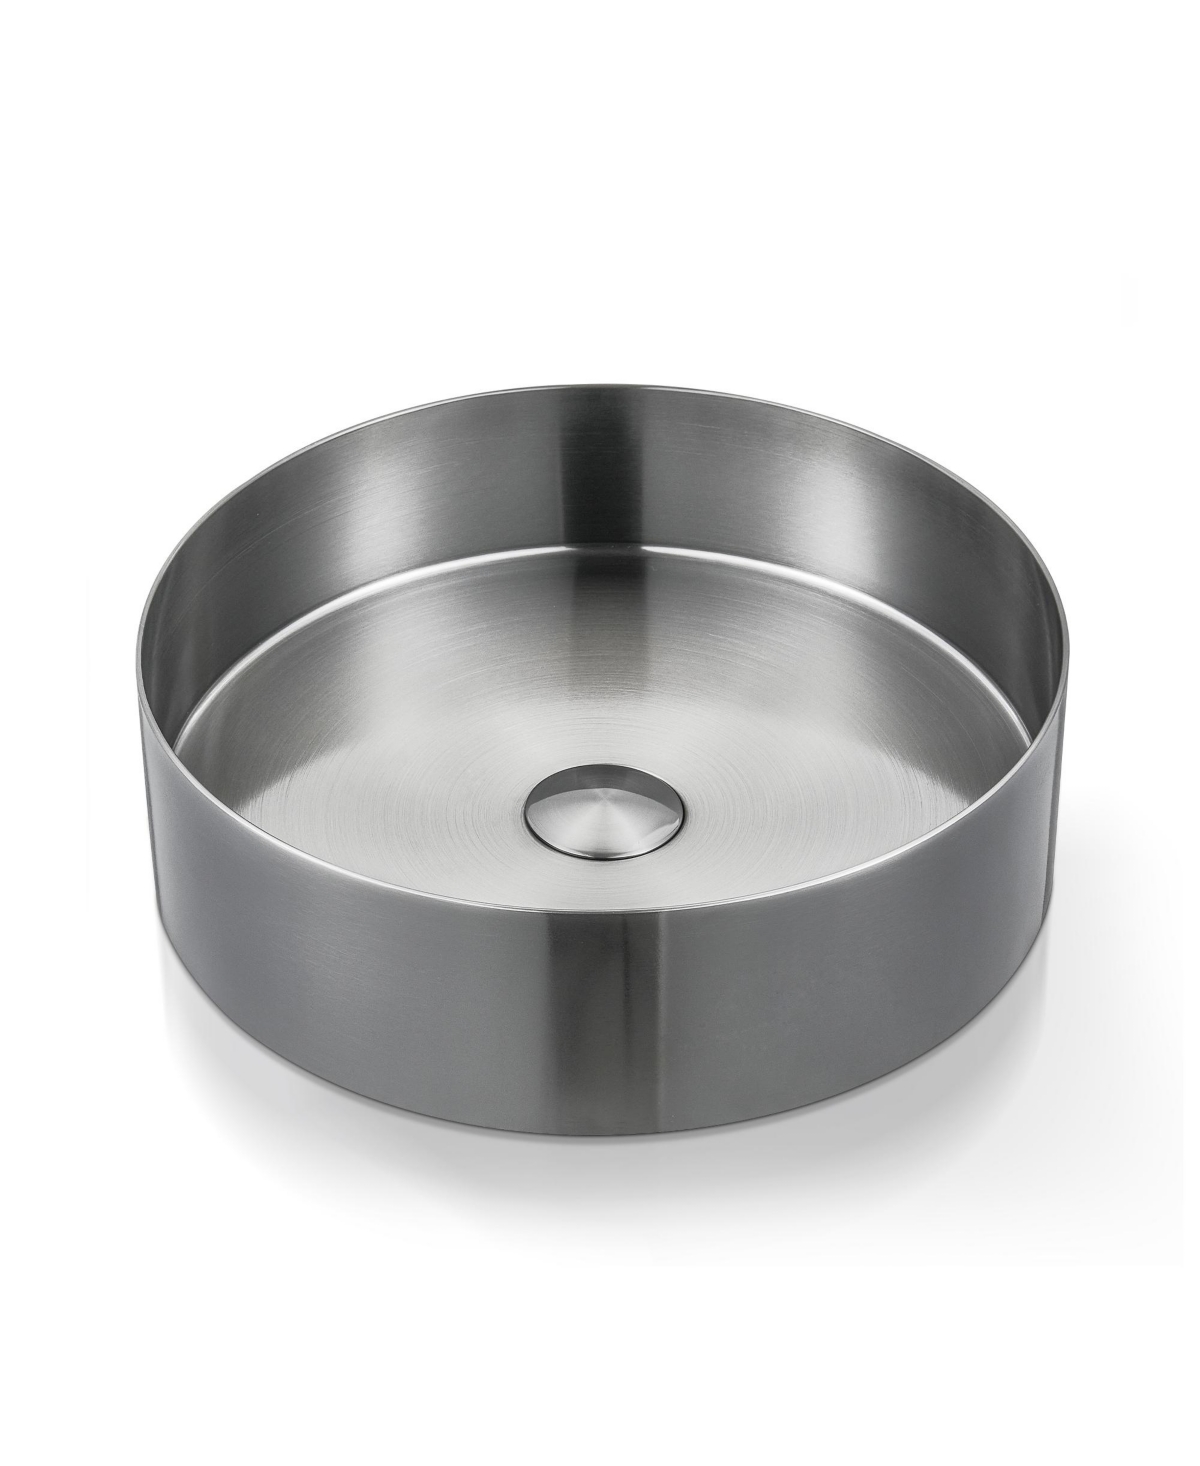 14.9'' Stainless Steel Circular Vessel Bathroom Sink - Silver